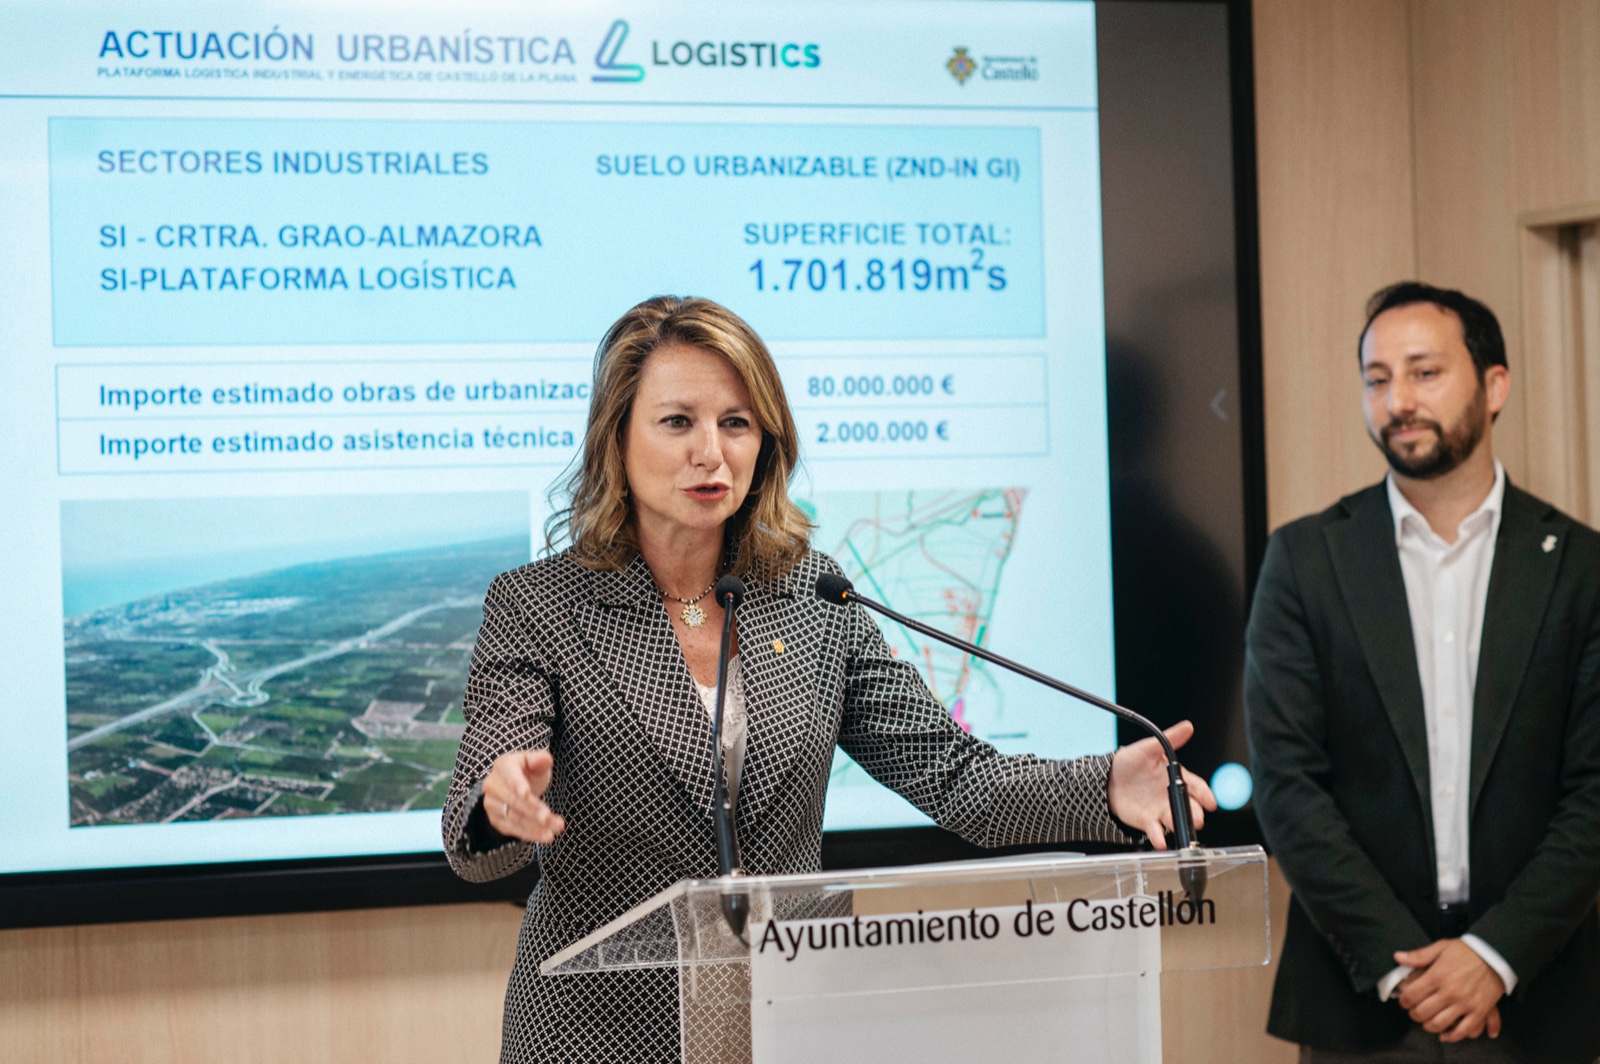 Begoña Carrasco: “Logistics arriba per a atraure més inversions, més empreses, més ocupacions de qualitat i major benestar a la ciutat de Castelló”